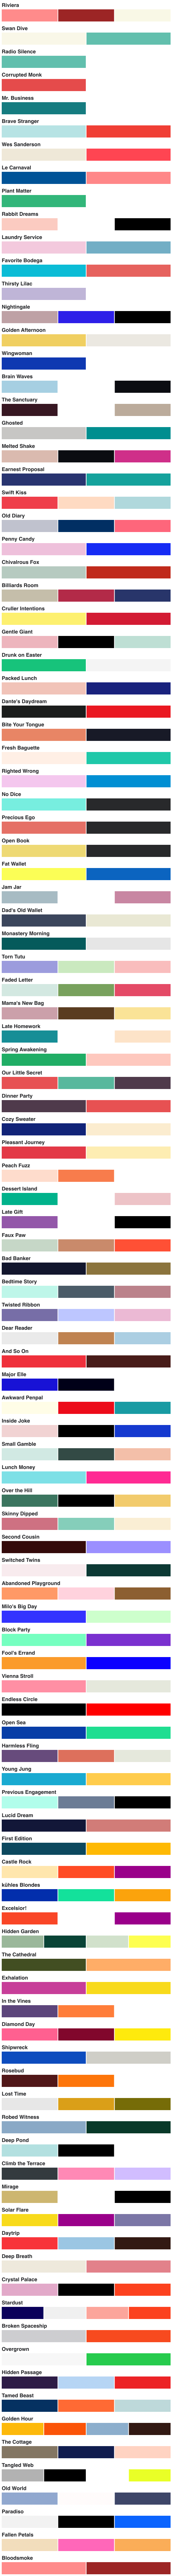 color palettes preview